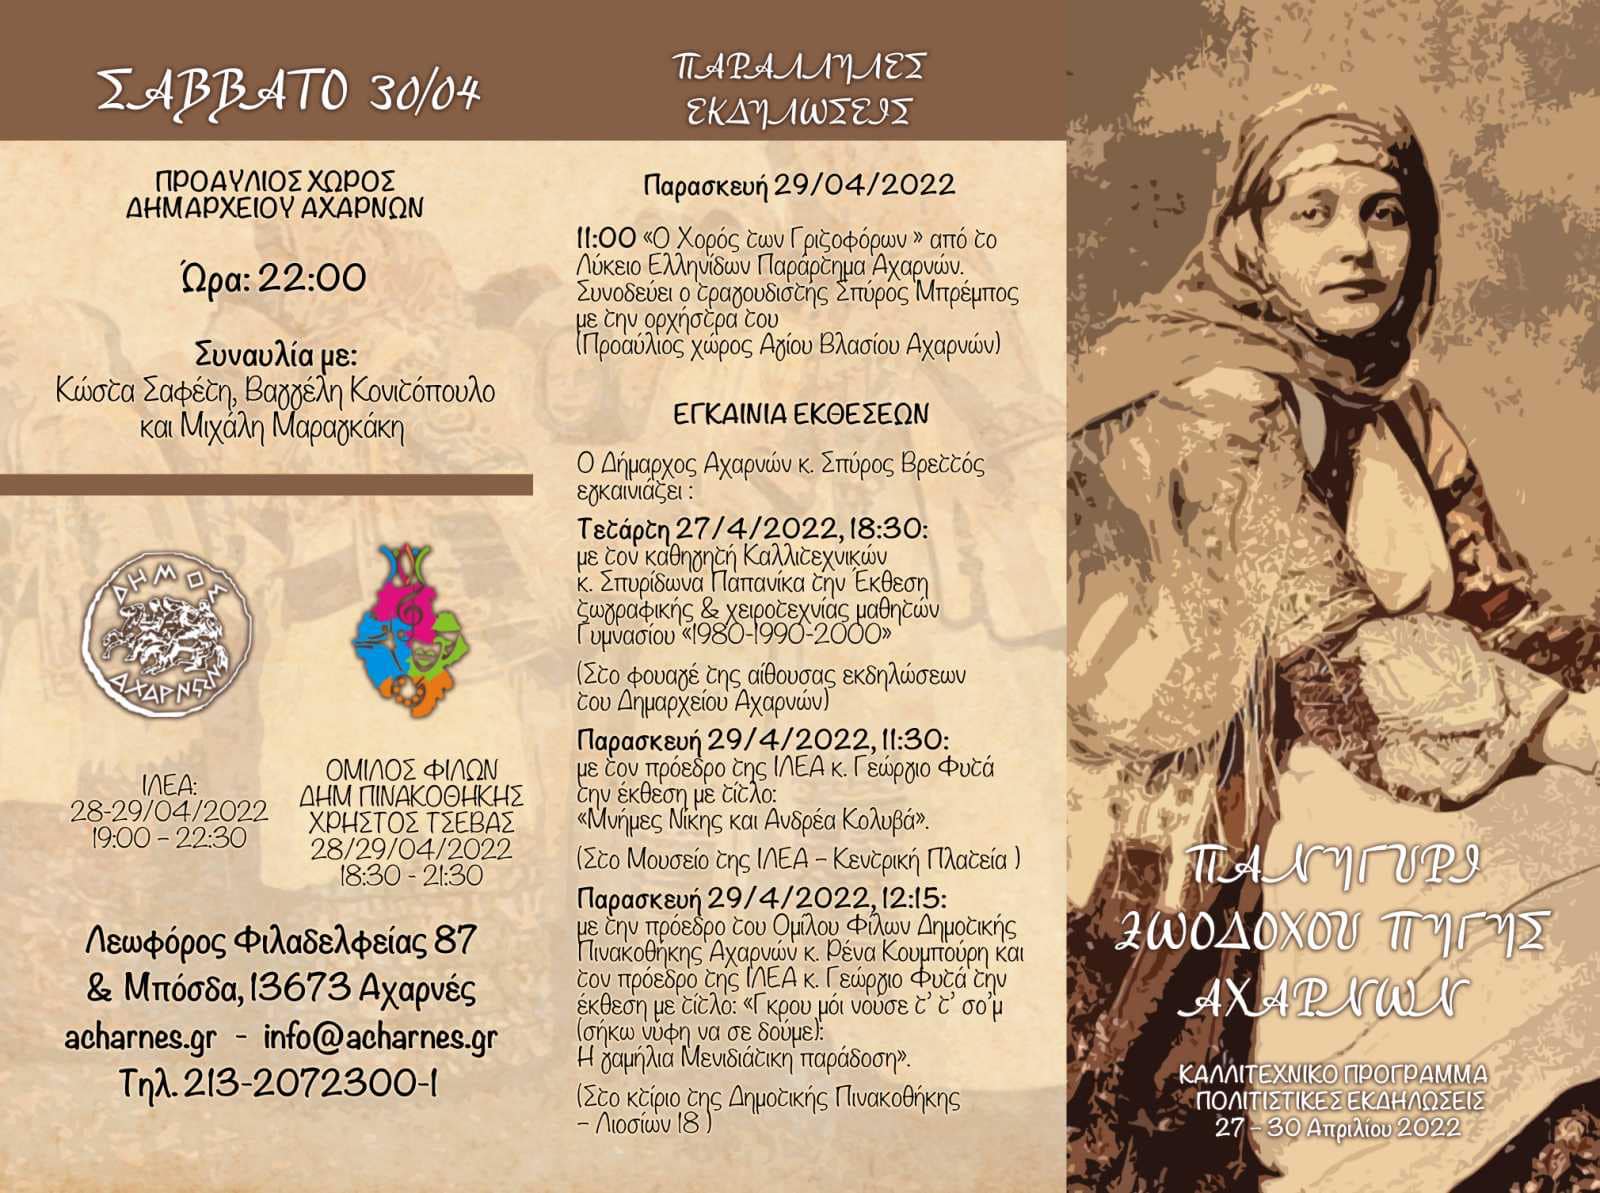 Καλλιτεχνικό και Πολιτιστικό Πρόγραμμα για το Πανηγύρι της Ζωοδόχου Πηγής στο Δήμο Αχαρνών